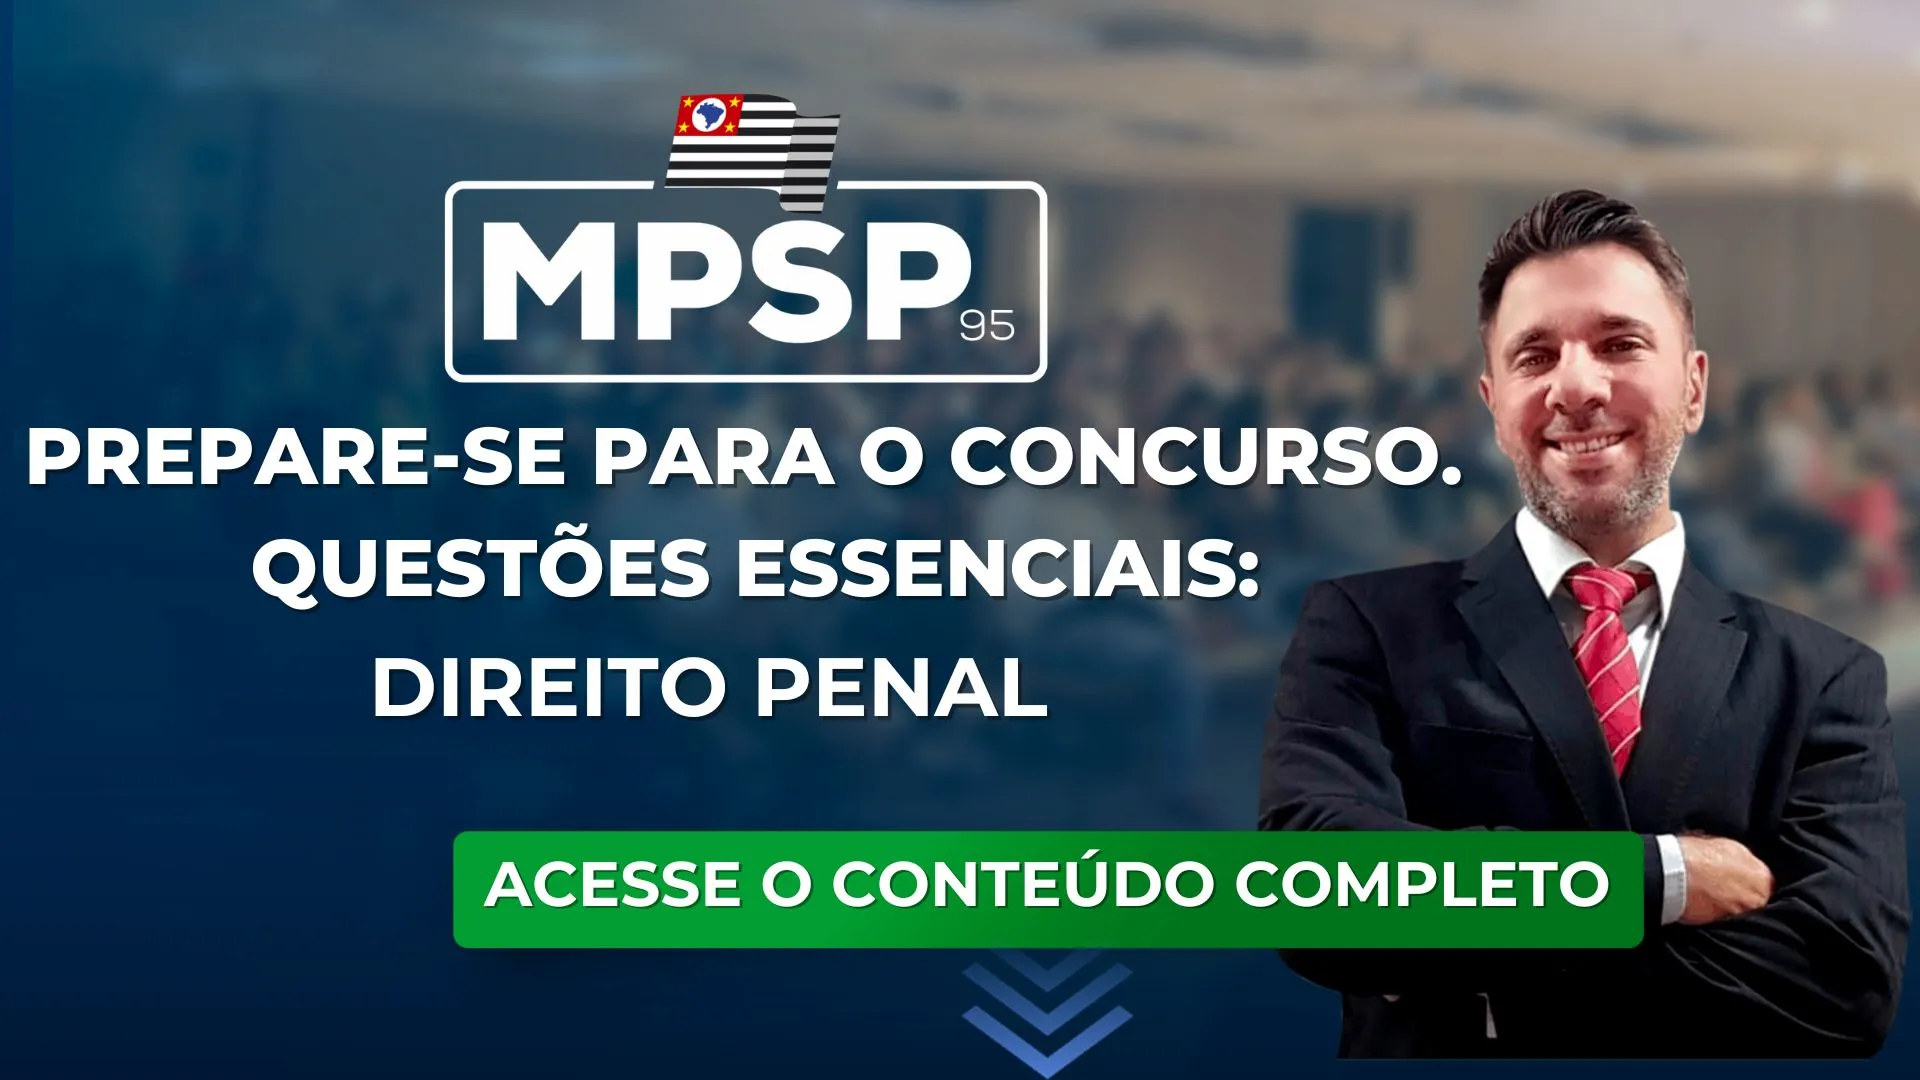 MPSP 95: Questões essenciais de Direito Penal para o concurso